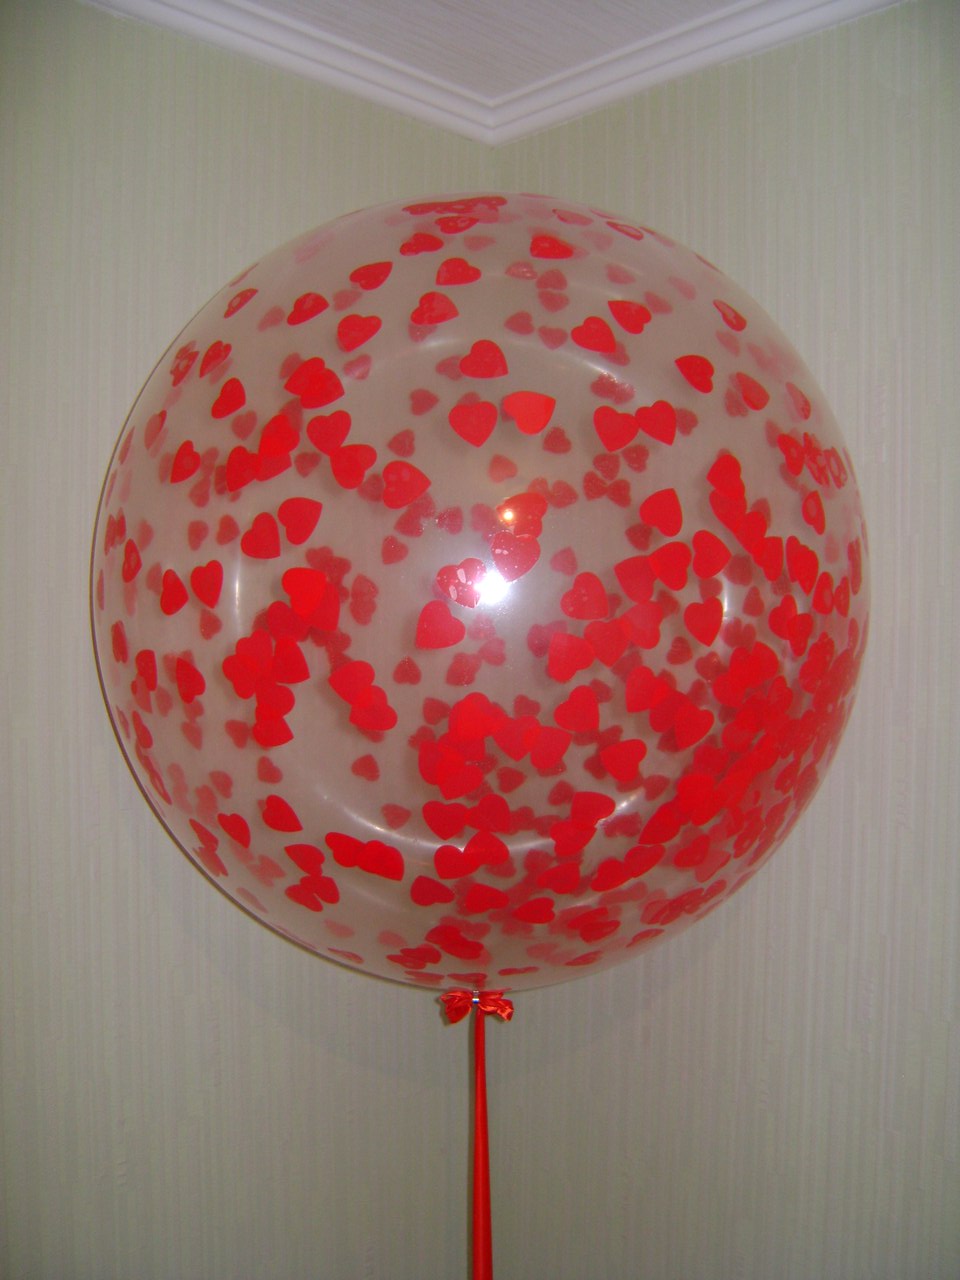 Большой гелиевый шар 60 см прозрачный с конфетти